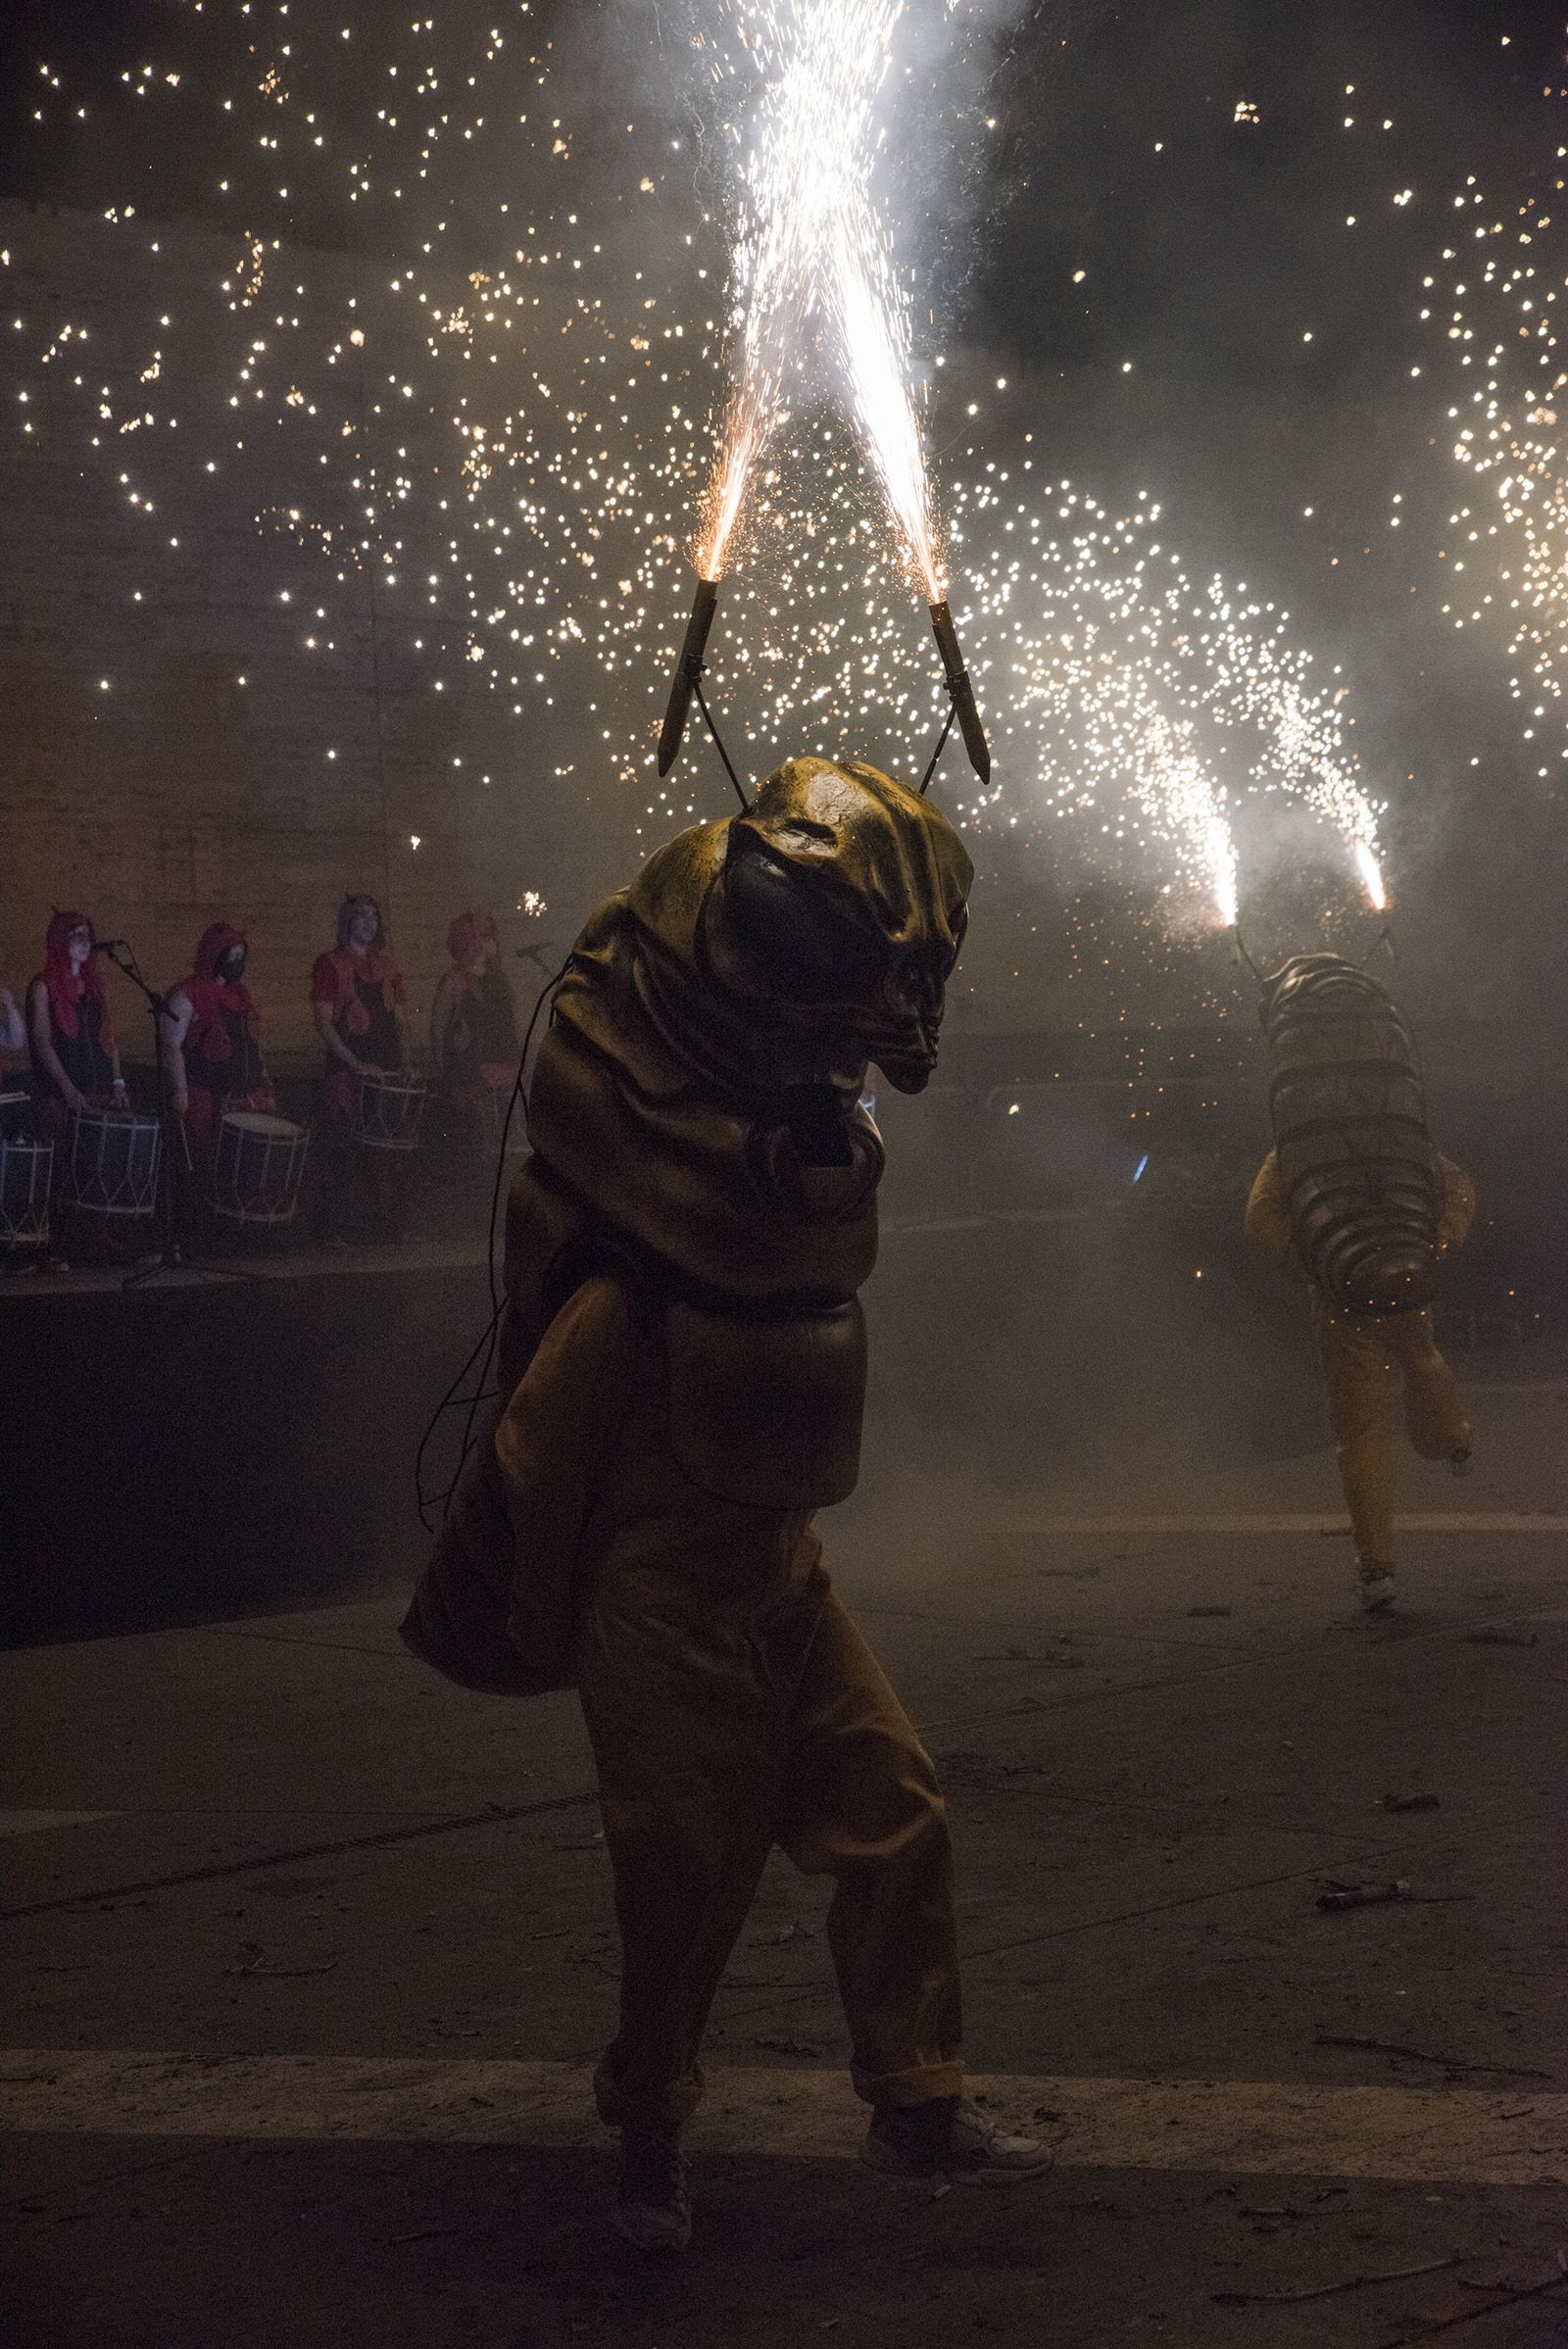 Versots i esclat de foc de Festa Major. Foto: Bernat Millet.